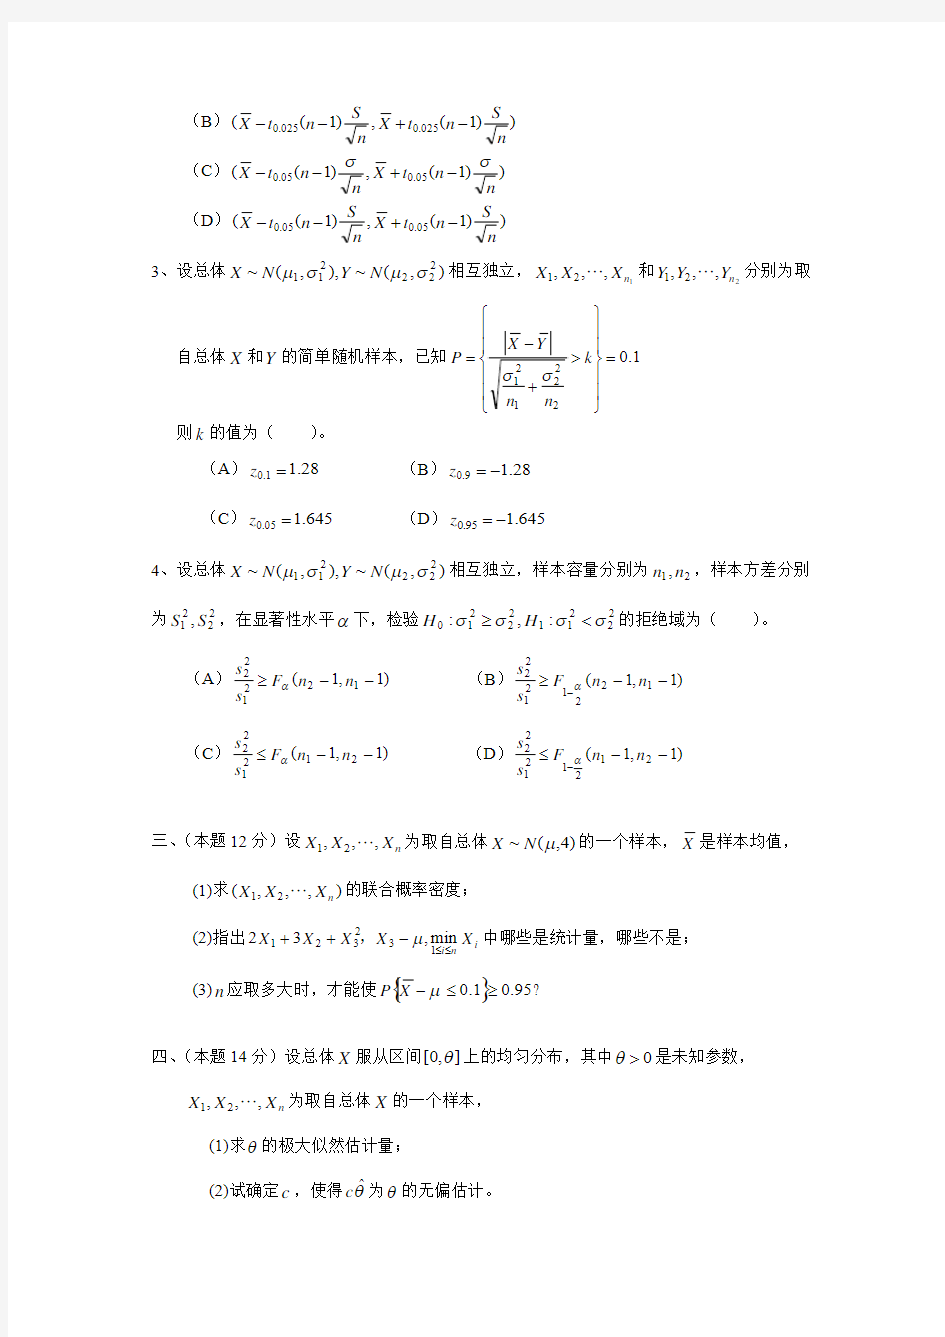 中南大学11级数理统计二试卷